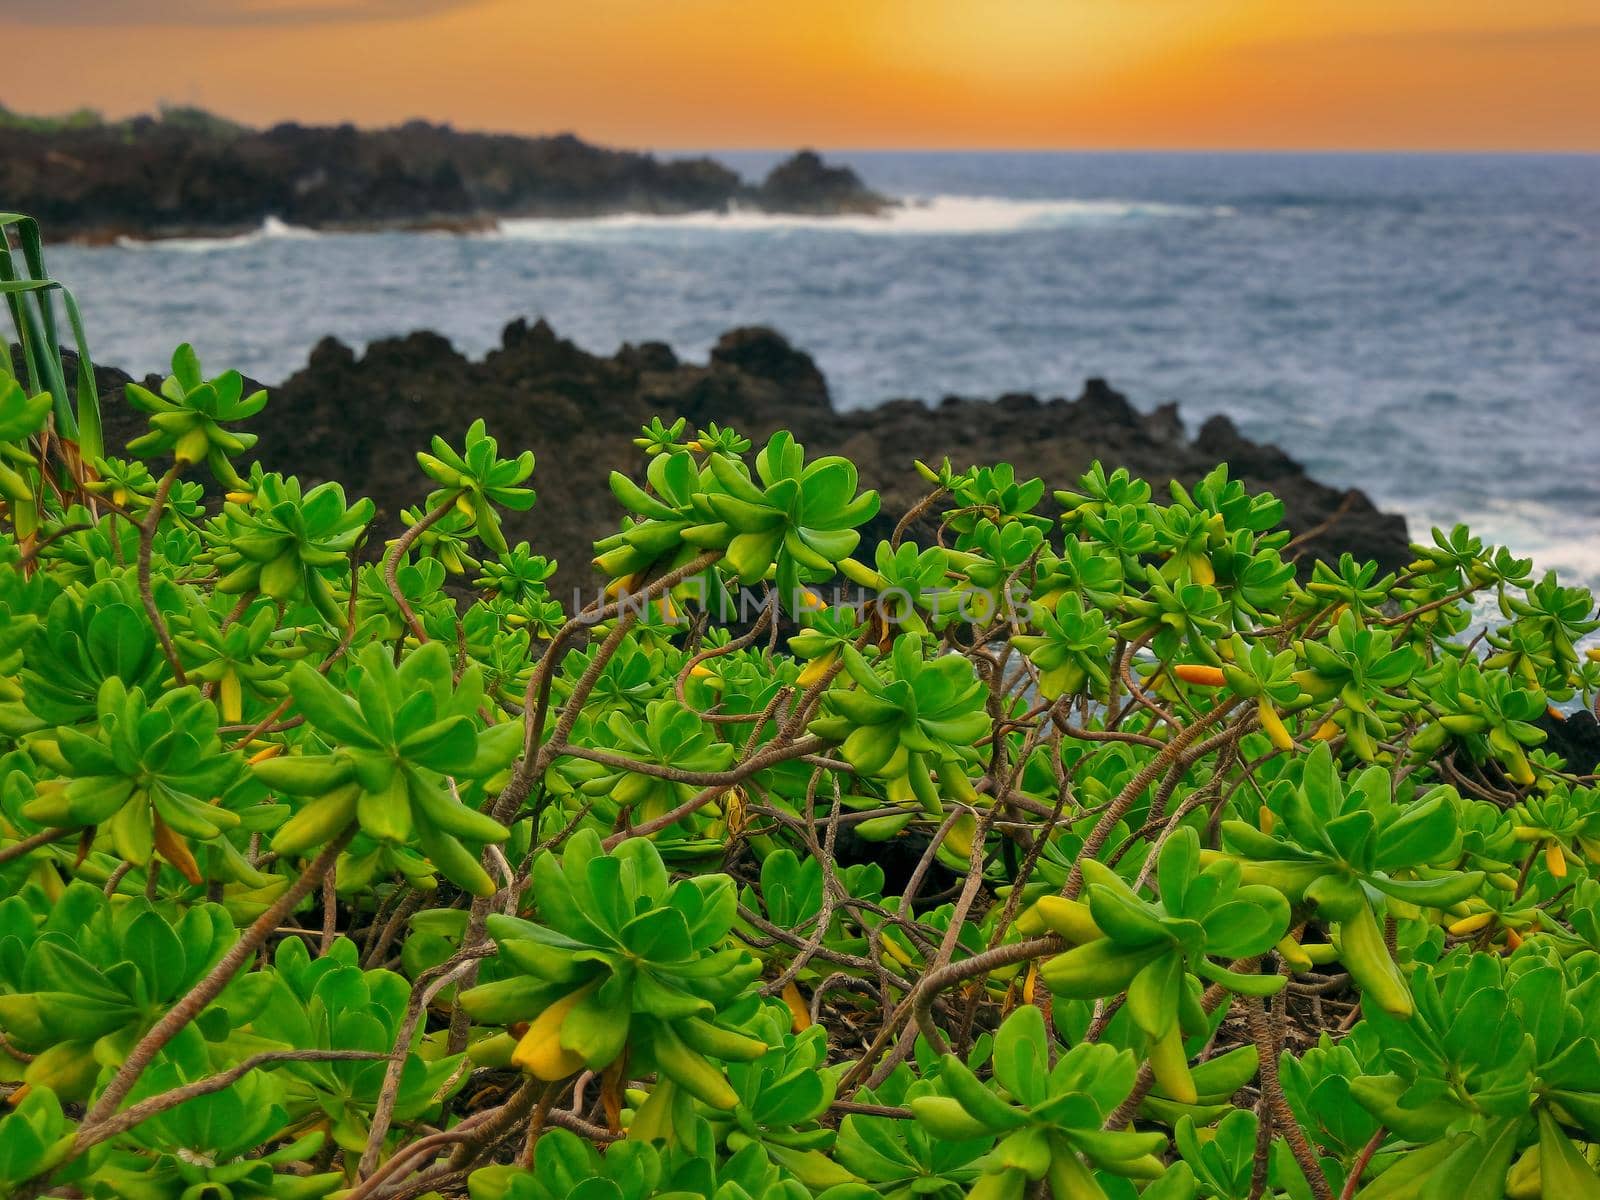 Naupaka Plants Grow Along Black Lava at Waianapanapa State Park in Hana, Hawaii at Sunset. High quality photo